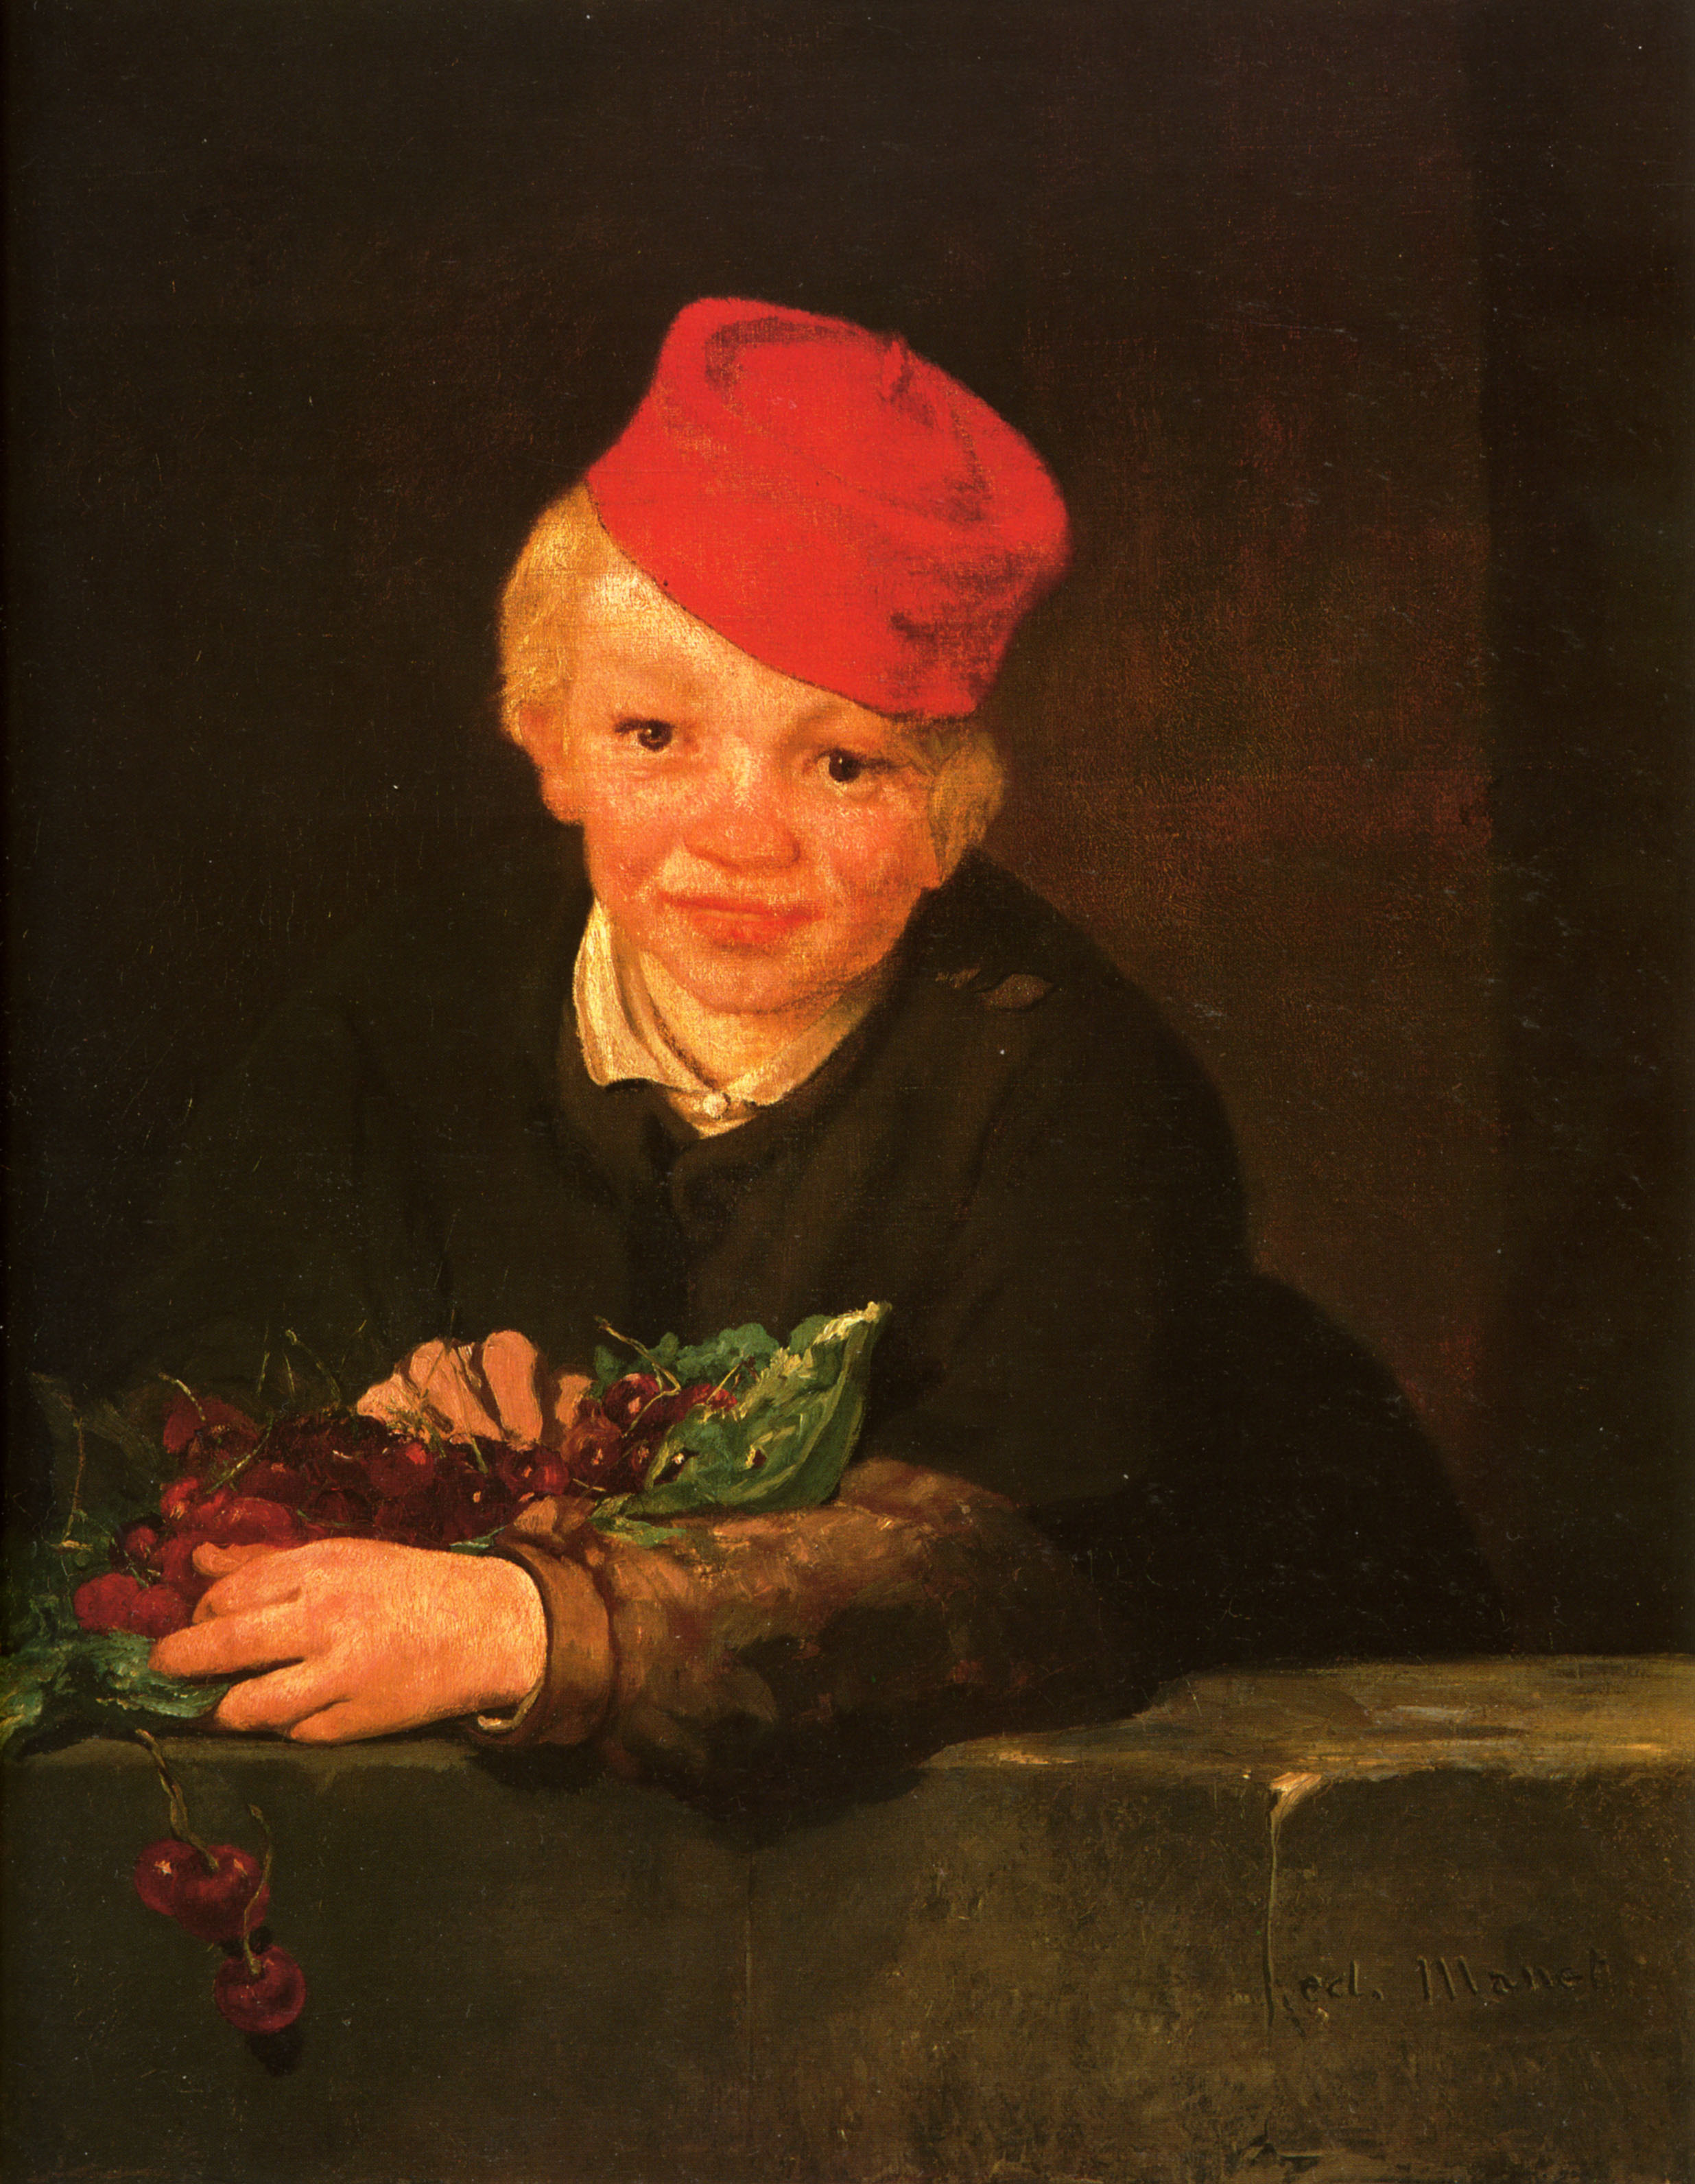 Эдуард Мане. "Мальчик с вишнями". 1859. Национальный музей современного искусства, Лиссабон.